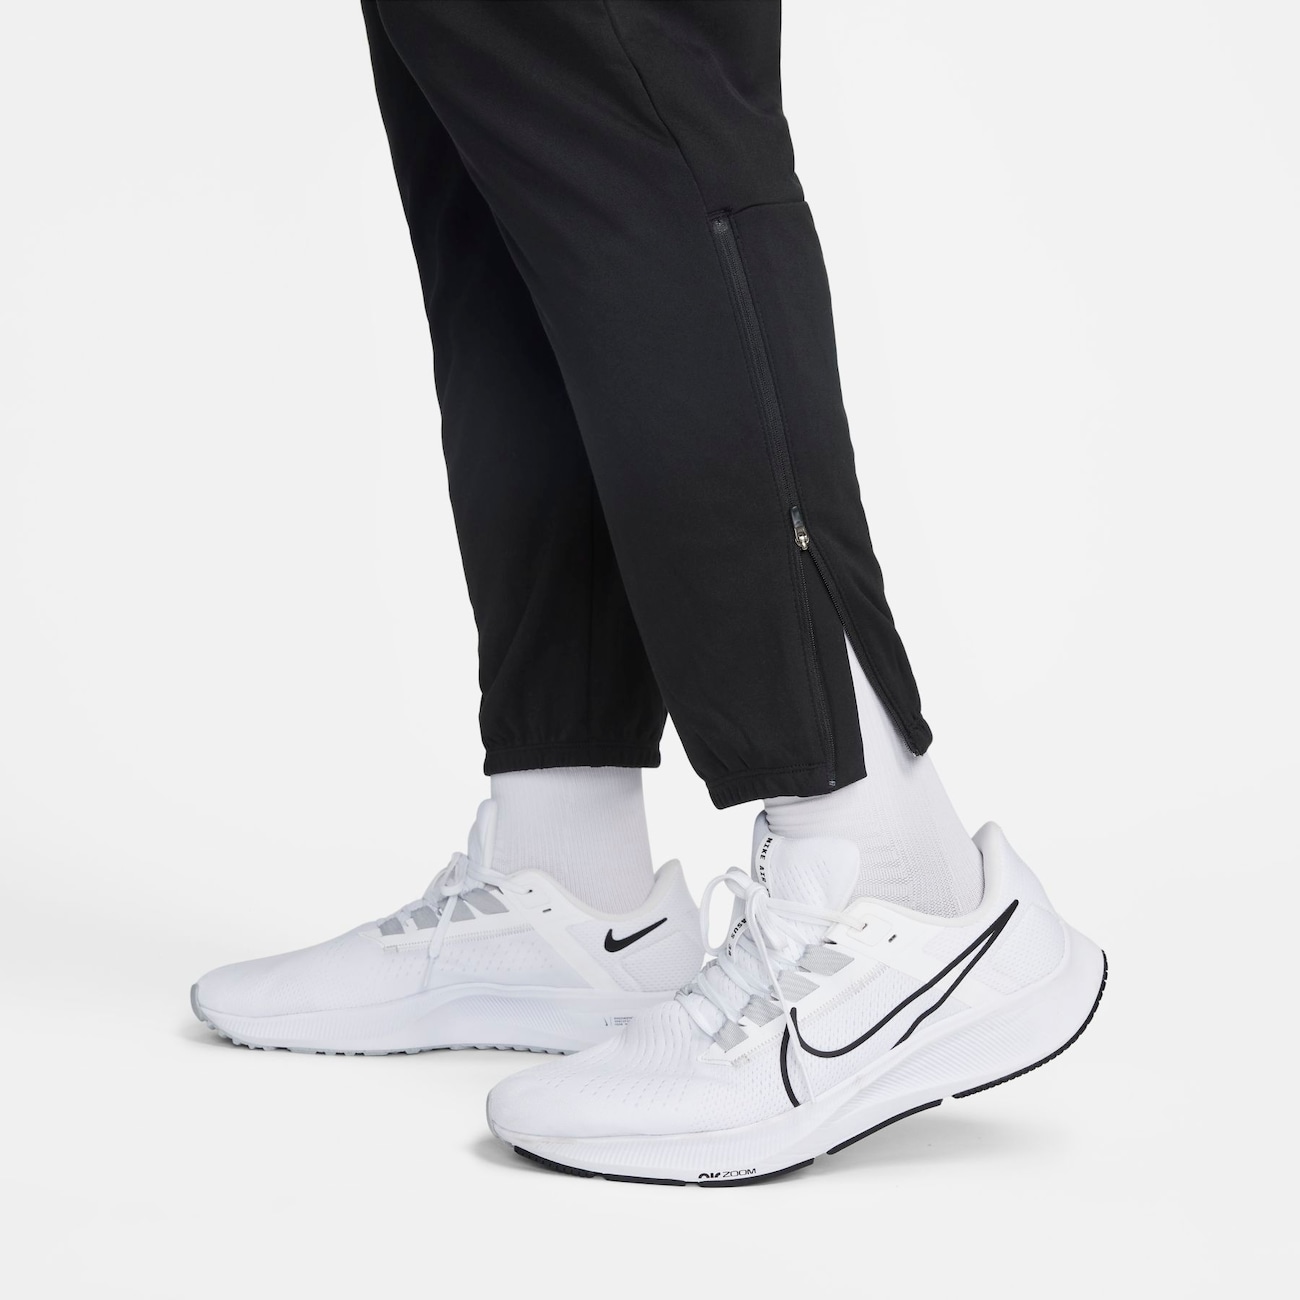 Calça Nike Dri-FIT Challenger Masculina - Foto 5